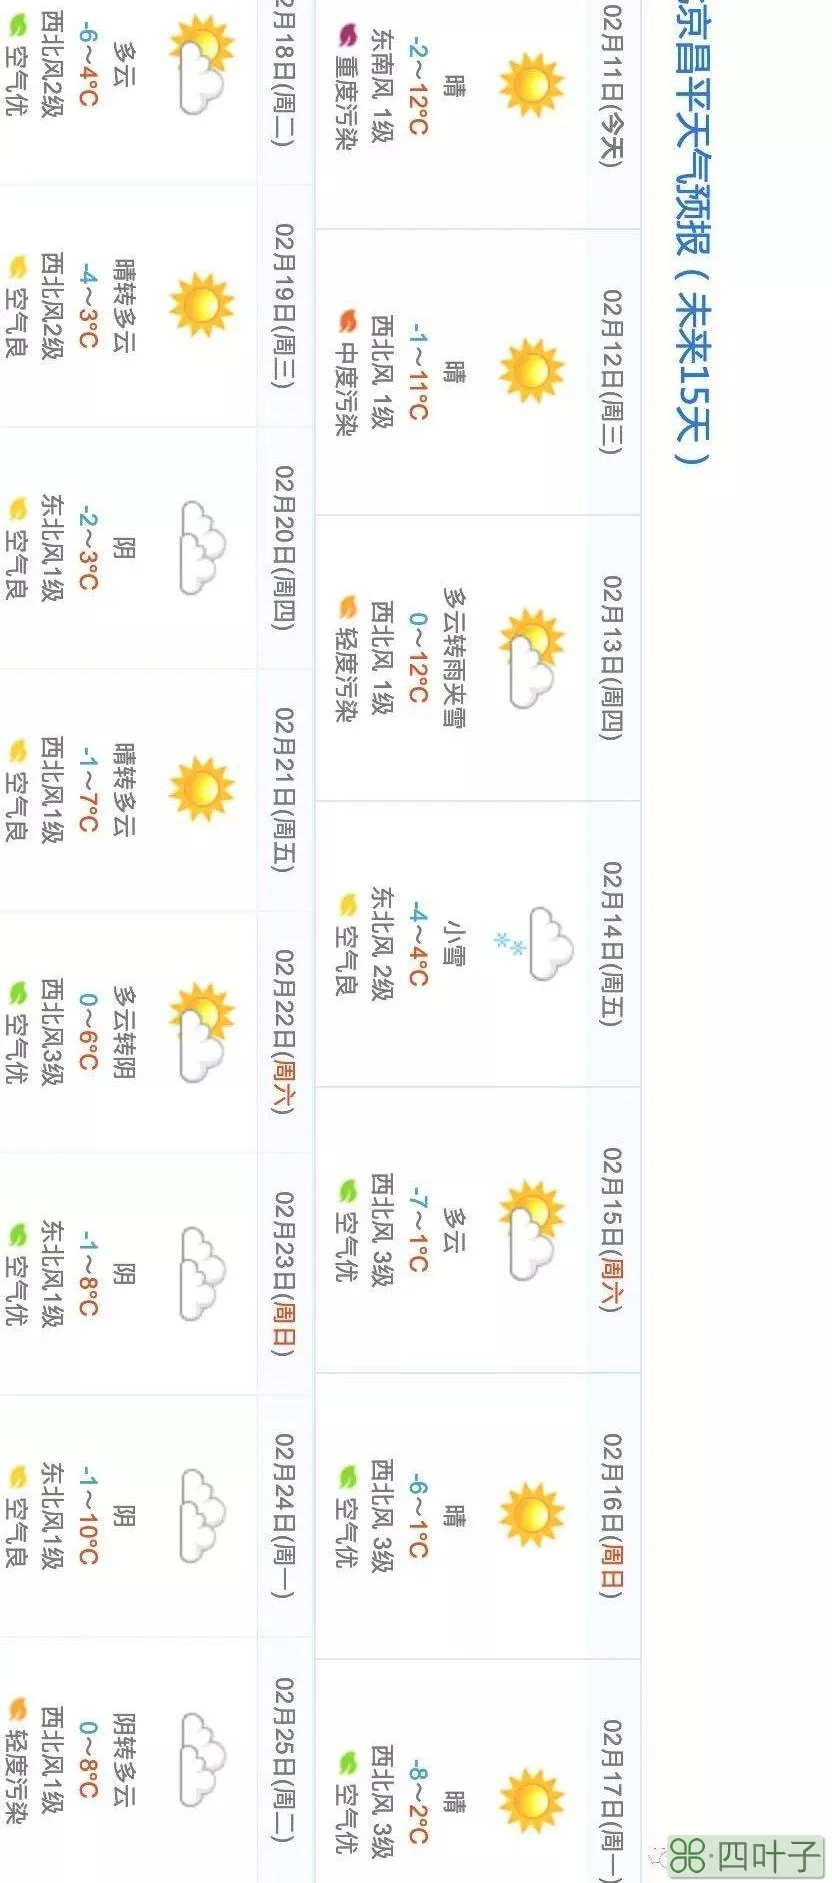 2月28日及3月1日北京天气预报的简单介绍